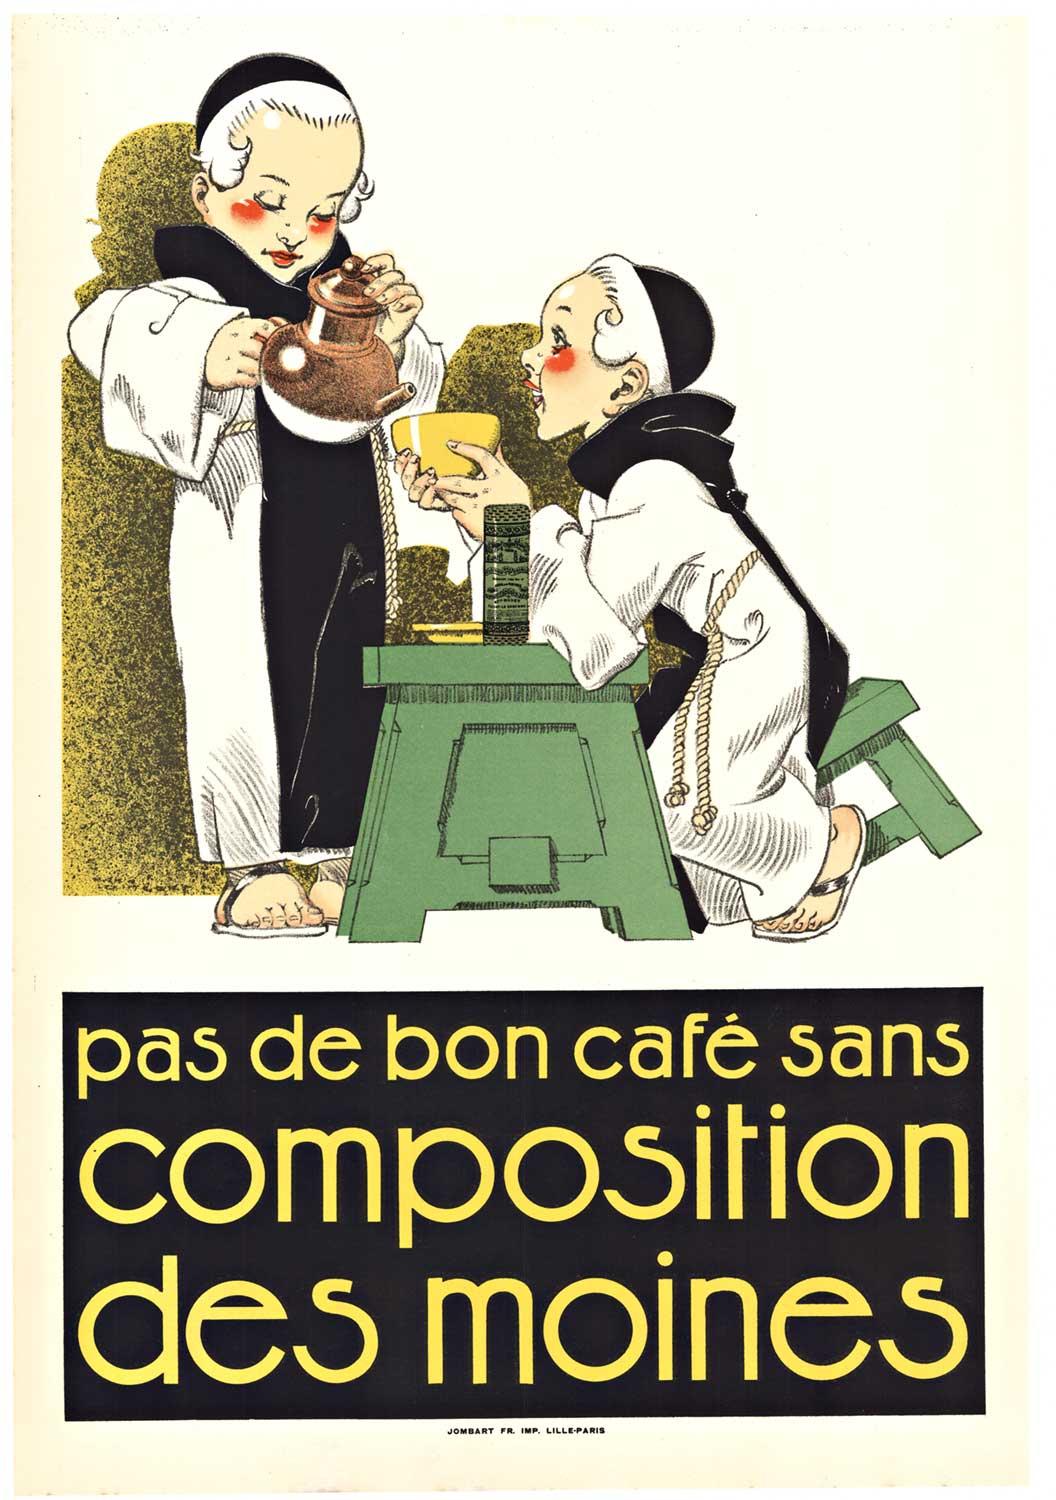 Rene Vincent Figurative Print - Original 'Pas de Bon Cafe sans Composition des Moines" vintage coffee poster